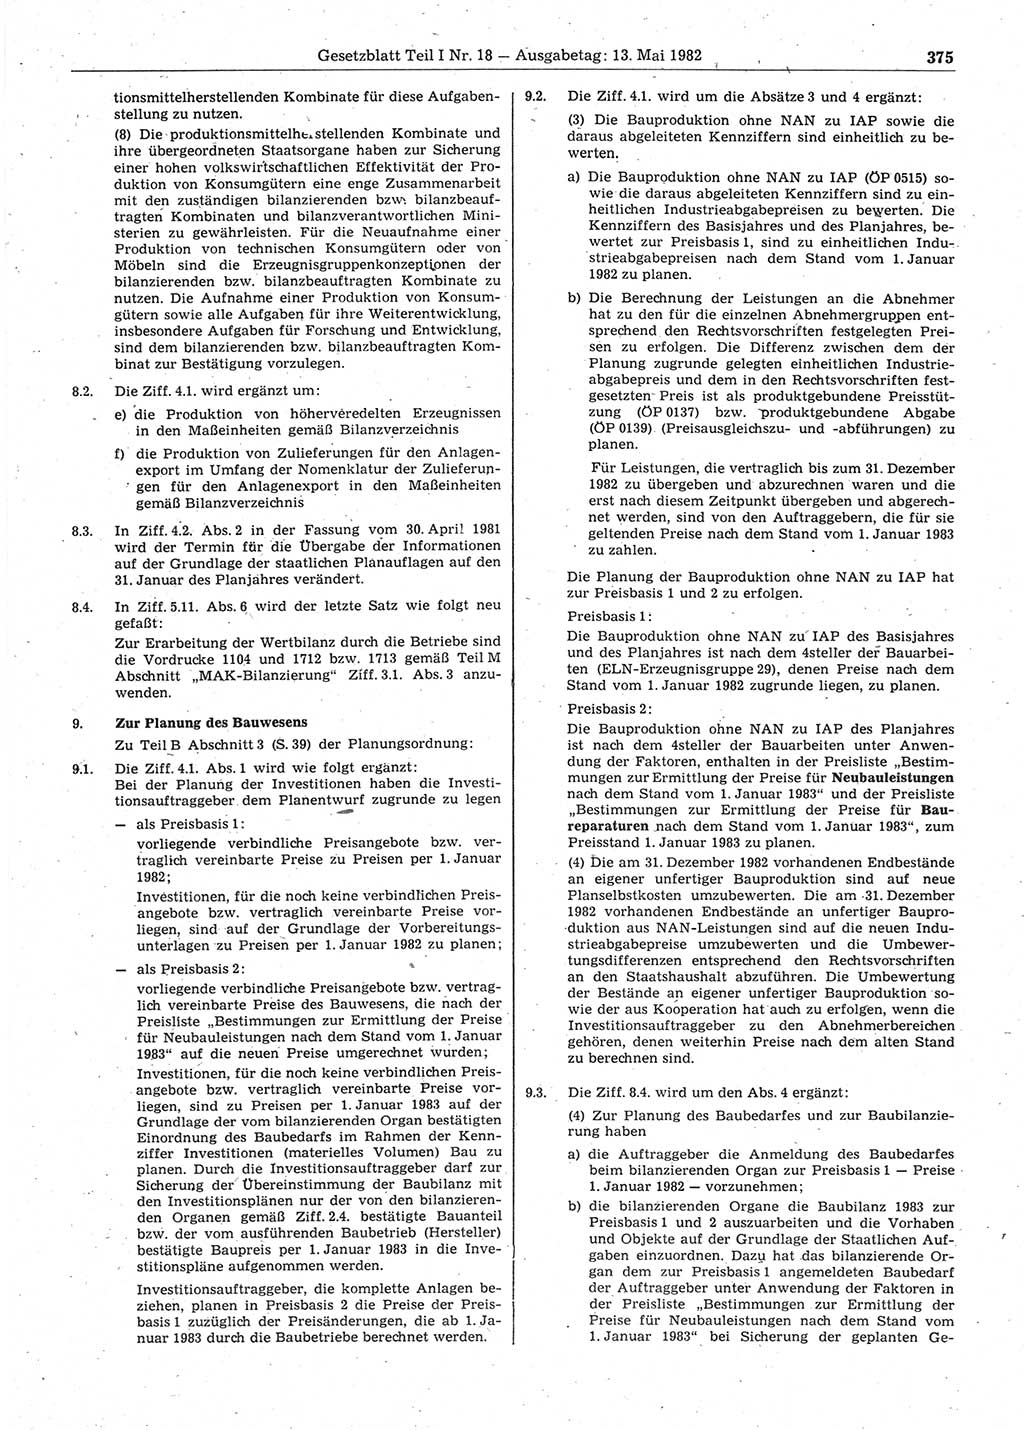 Gesetzblatt (GBl.) der Deutschen Demokratischen Republik (DDR) Teil Ⅰ 1982, Seite 375 (GBl. DDR Ⅰ 1982, S. 375)